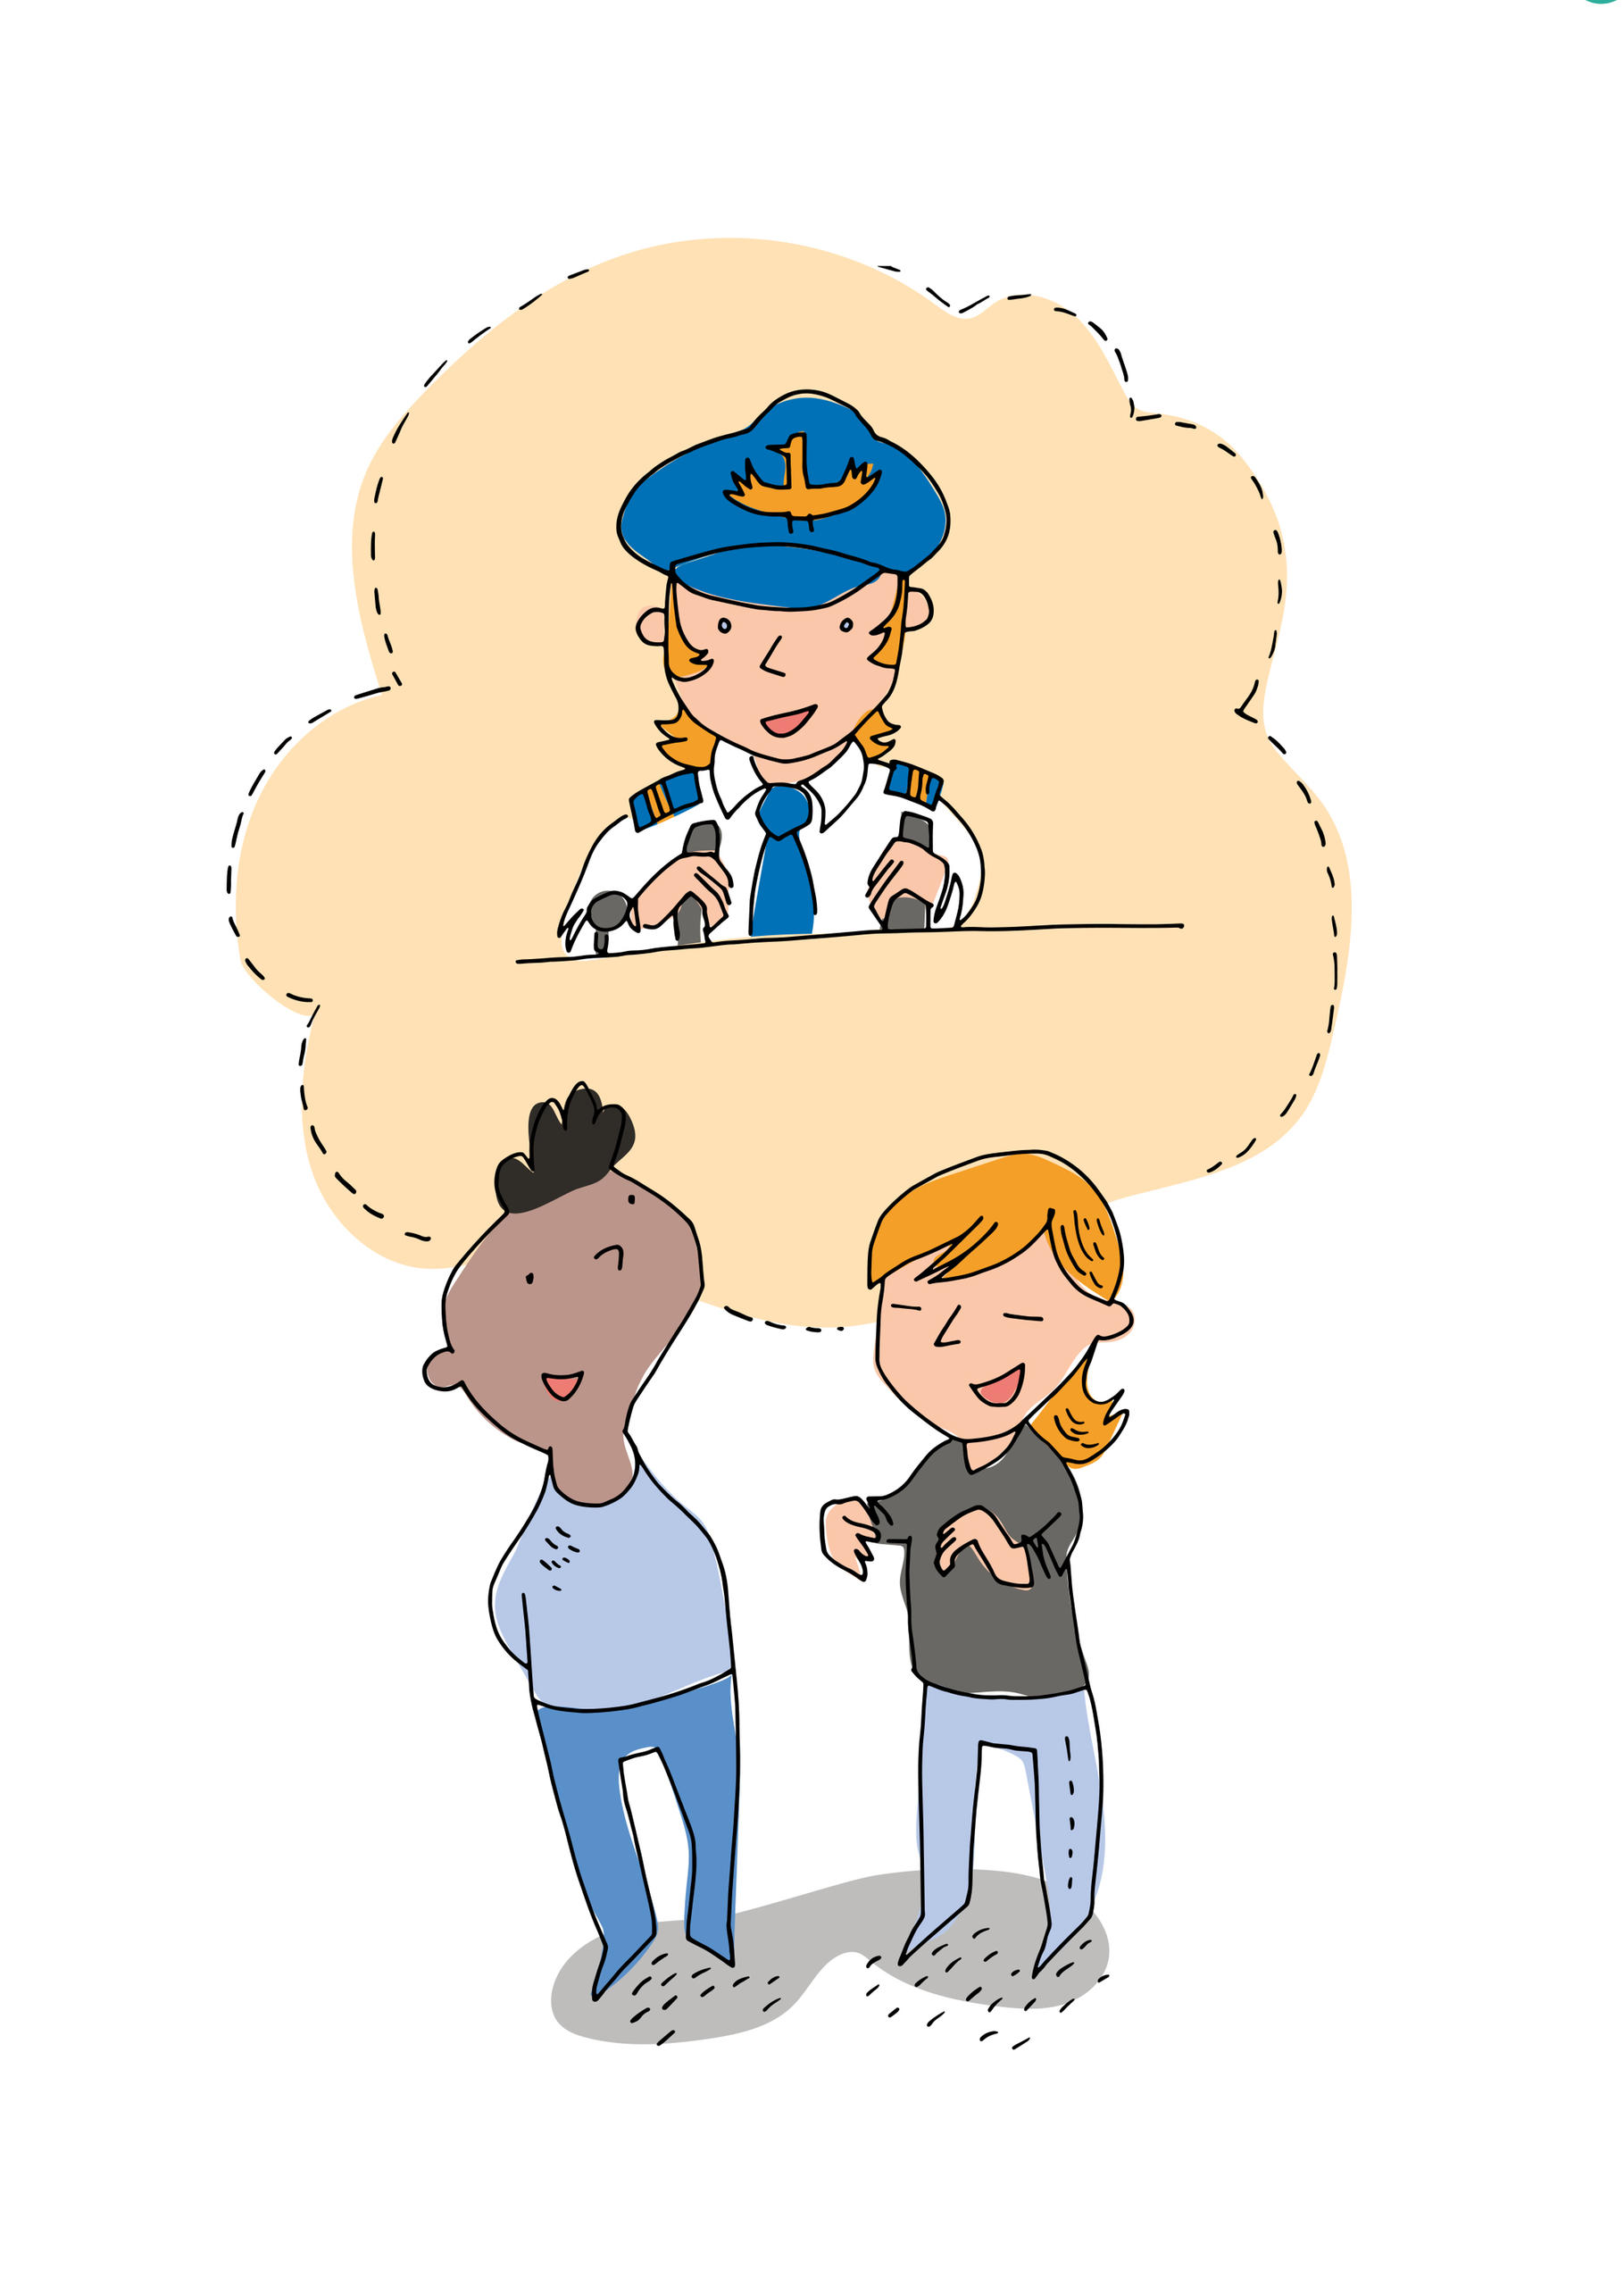 (fumetto) una ragazzina e un ragazzino parlano; dietro di loro in una nuvola il ritratto di una pilota civile di aerei